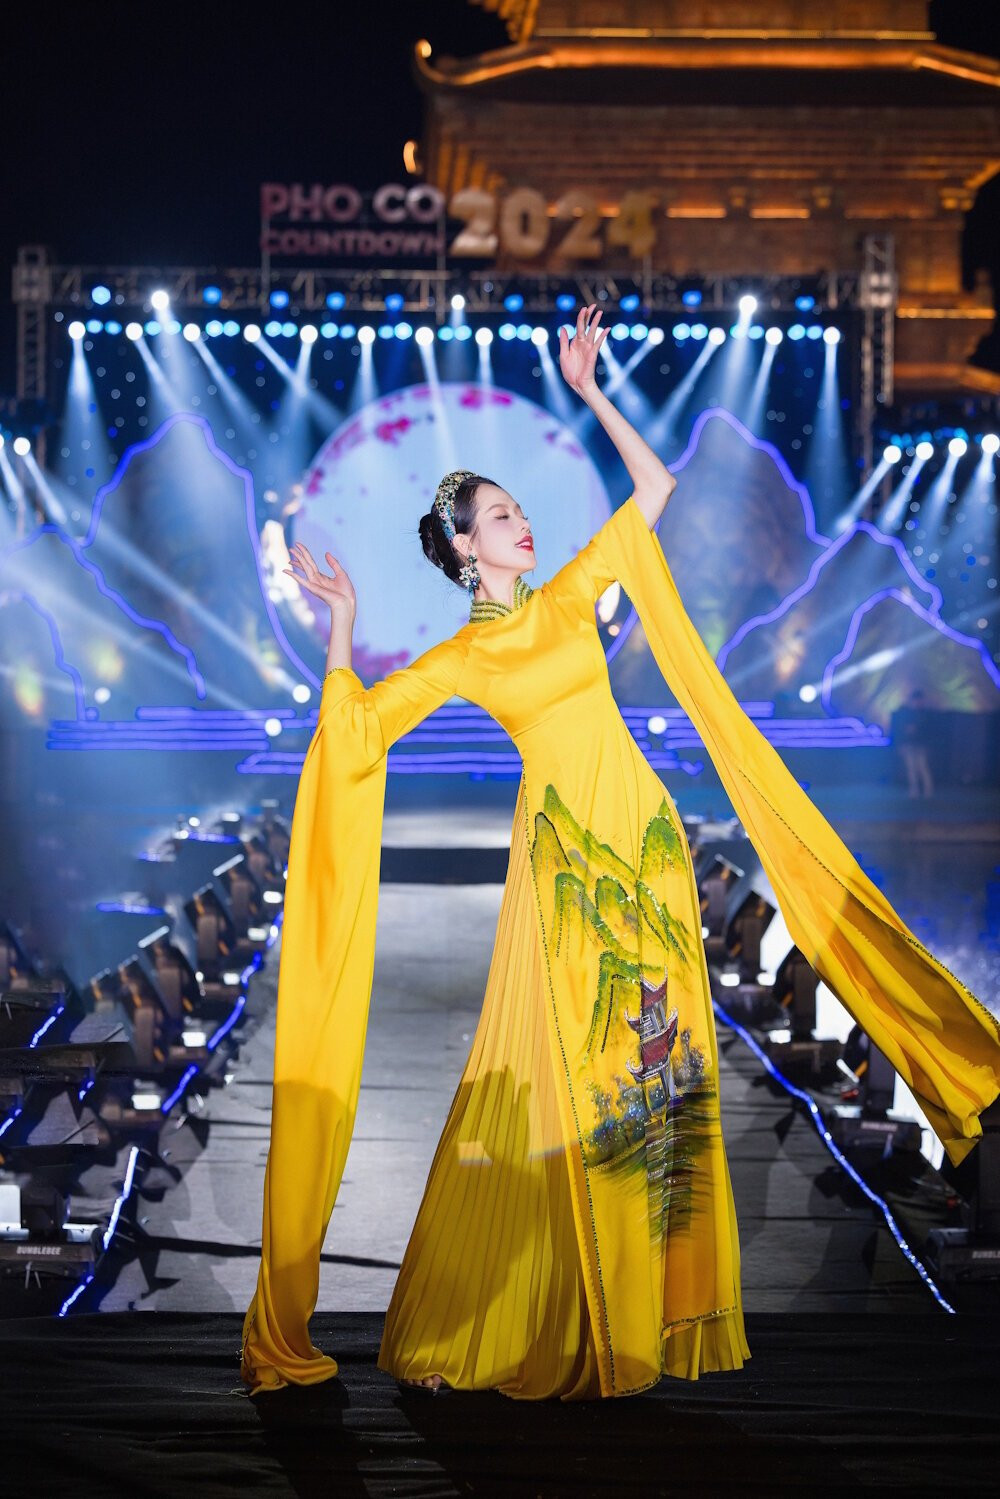 Hoa hậu Thanh Thủy xuất hiện rạng ngời trong bộ áo dài tái hiện hình ảnh non nước Tràng An có sắc vàng là chủ đạo.